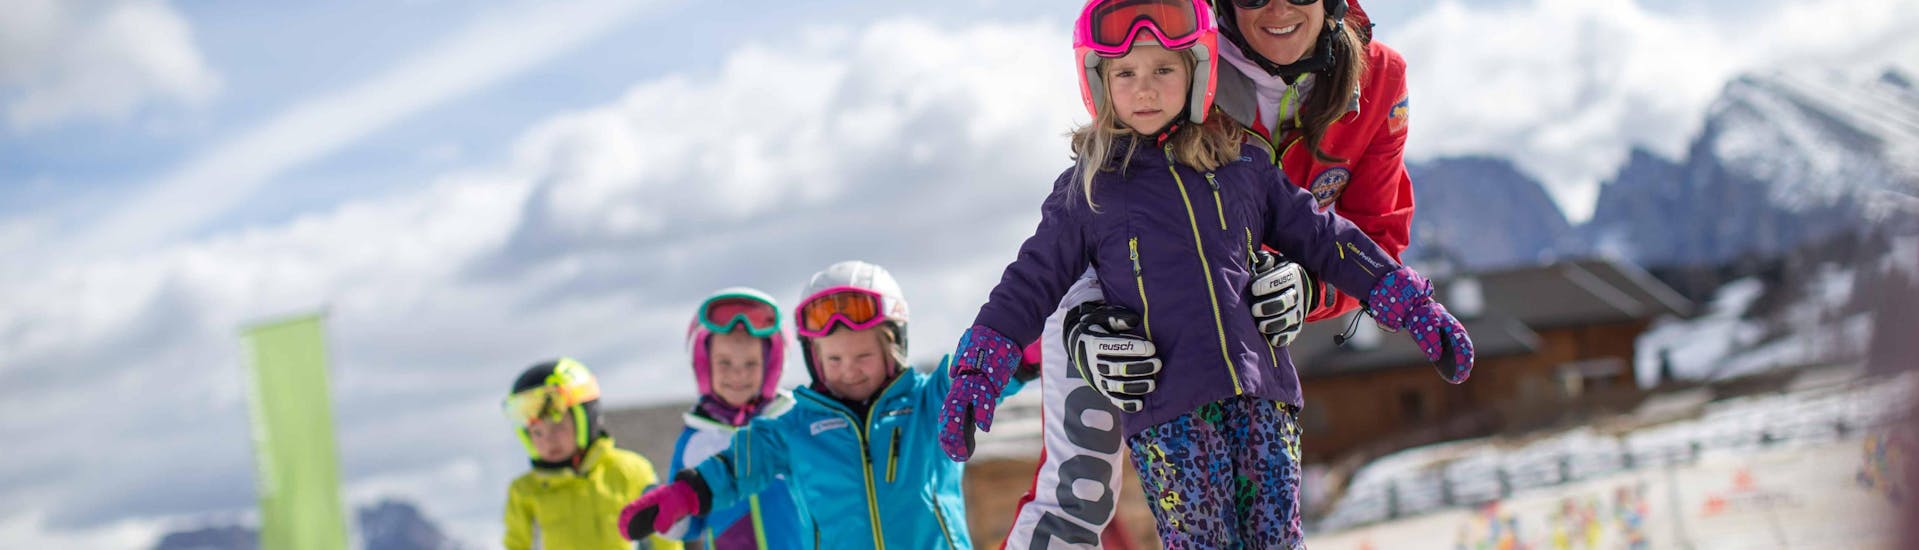 Spaß im Schnee beim Kinder-Skikurs für Fortgeschrittene mit der Skischule Seiser Alm.